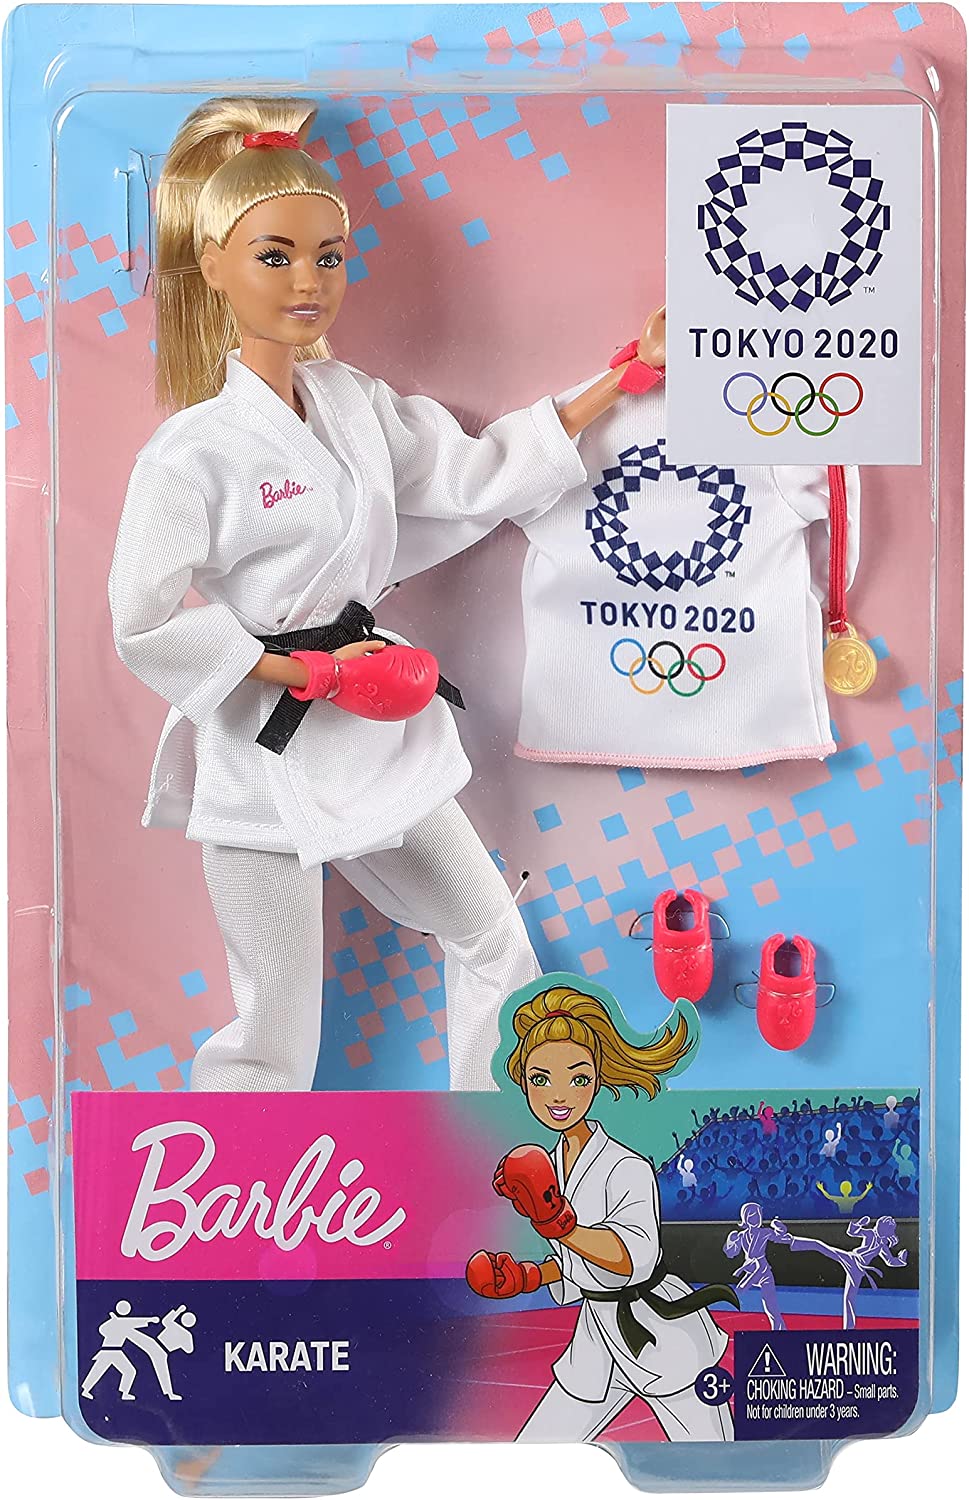 Barbie GJL74 -Olympische Sommerspiele Tokyo 2020 Karate Puppe mit Outfit, Tokyo 2020-Jacke, Medaille, Helm, Karate-Handschuhen und Sandalen